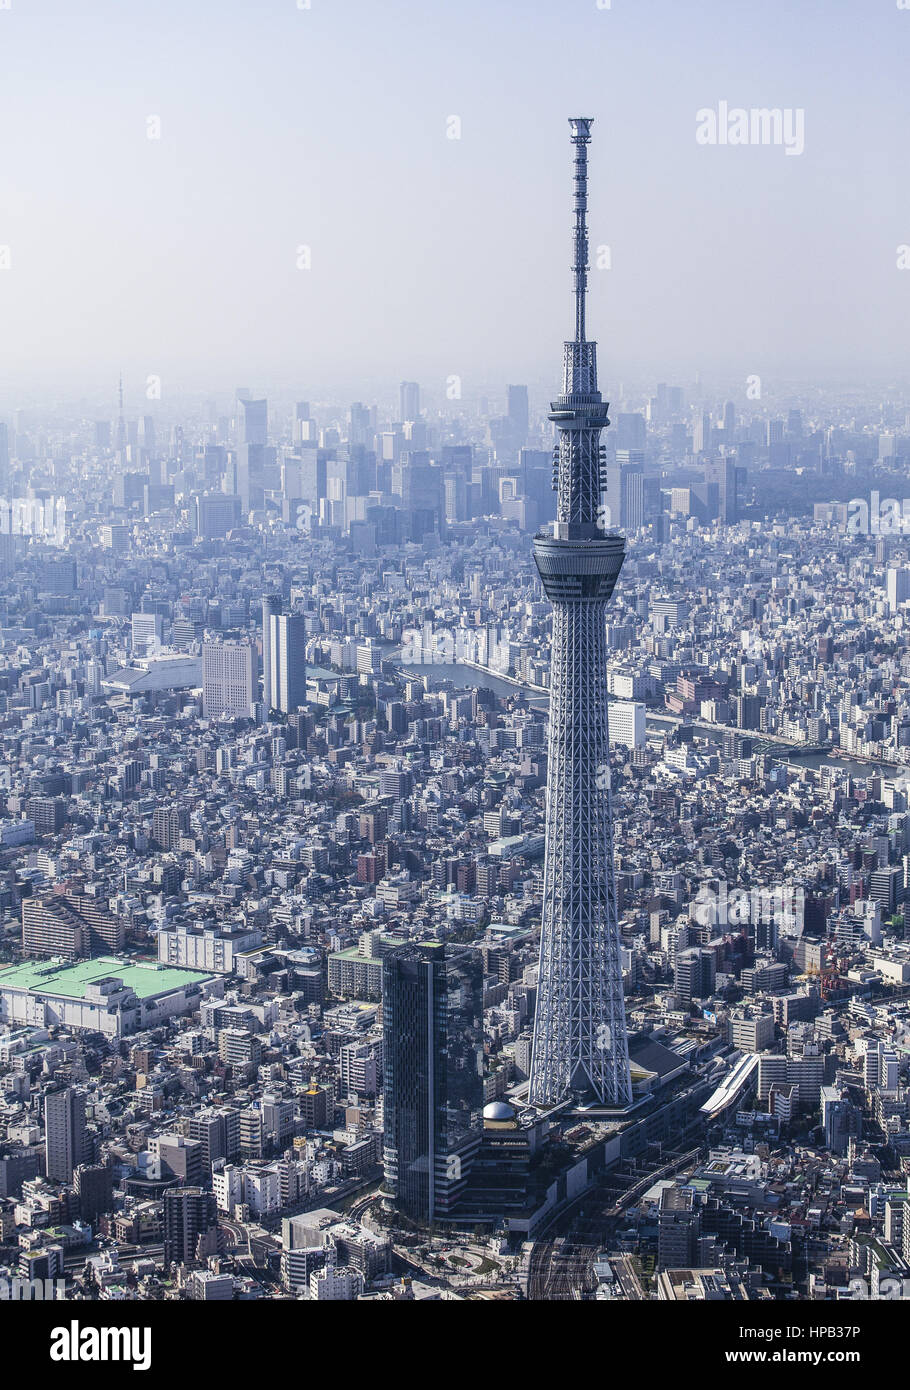 Tokio, Fernsehturm, Skytree, Japan Stock Photo